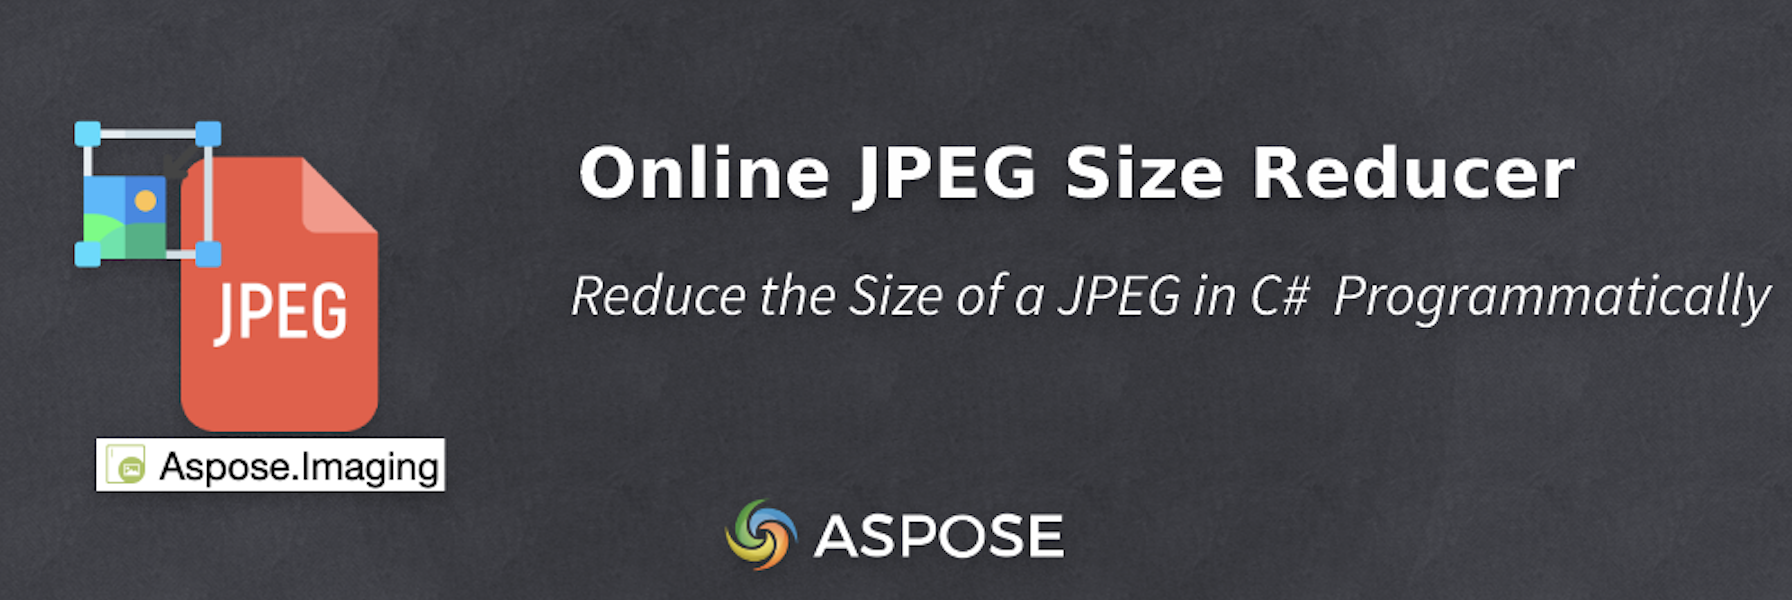 Reducir el tamaño de un JPEG en C# - Reductor de tamaño JPEG en línea